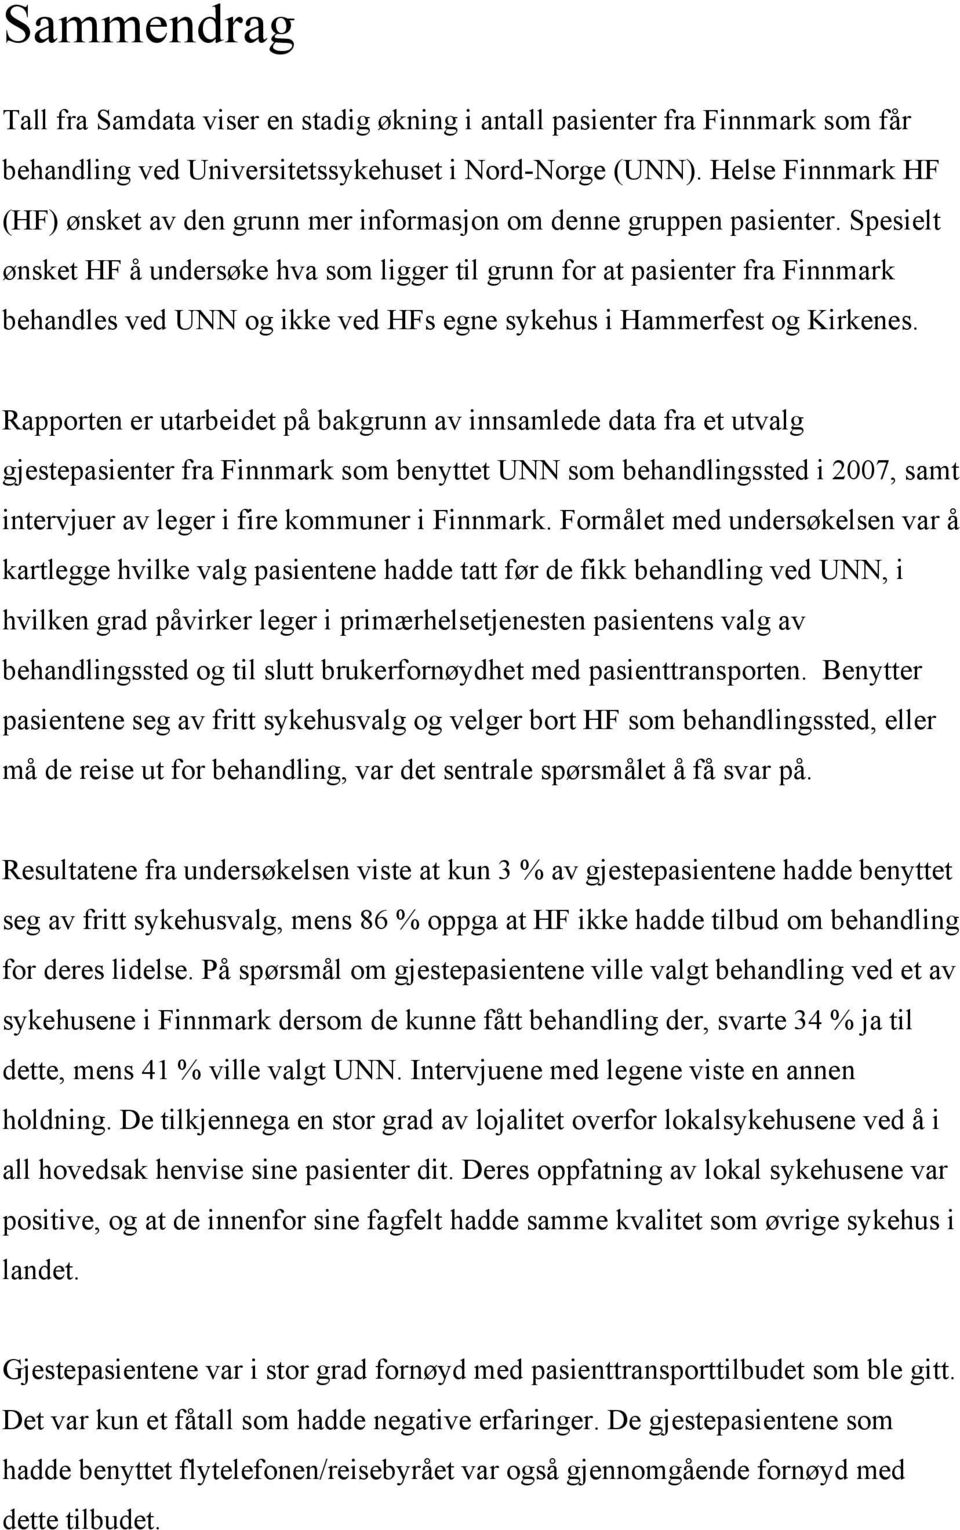 Spesielt ønsket HF å undersøke hva som ligger til grunn for at pasienter fra Finnmark behandles ved UNN og ikke ved HFs egne sykehus i Hammerfest og Kirkenes.